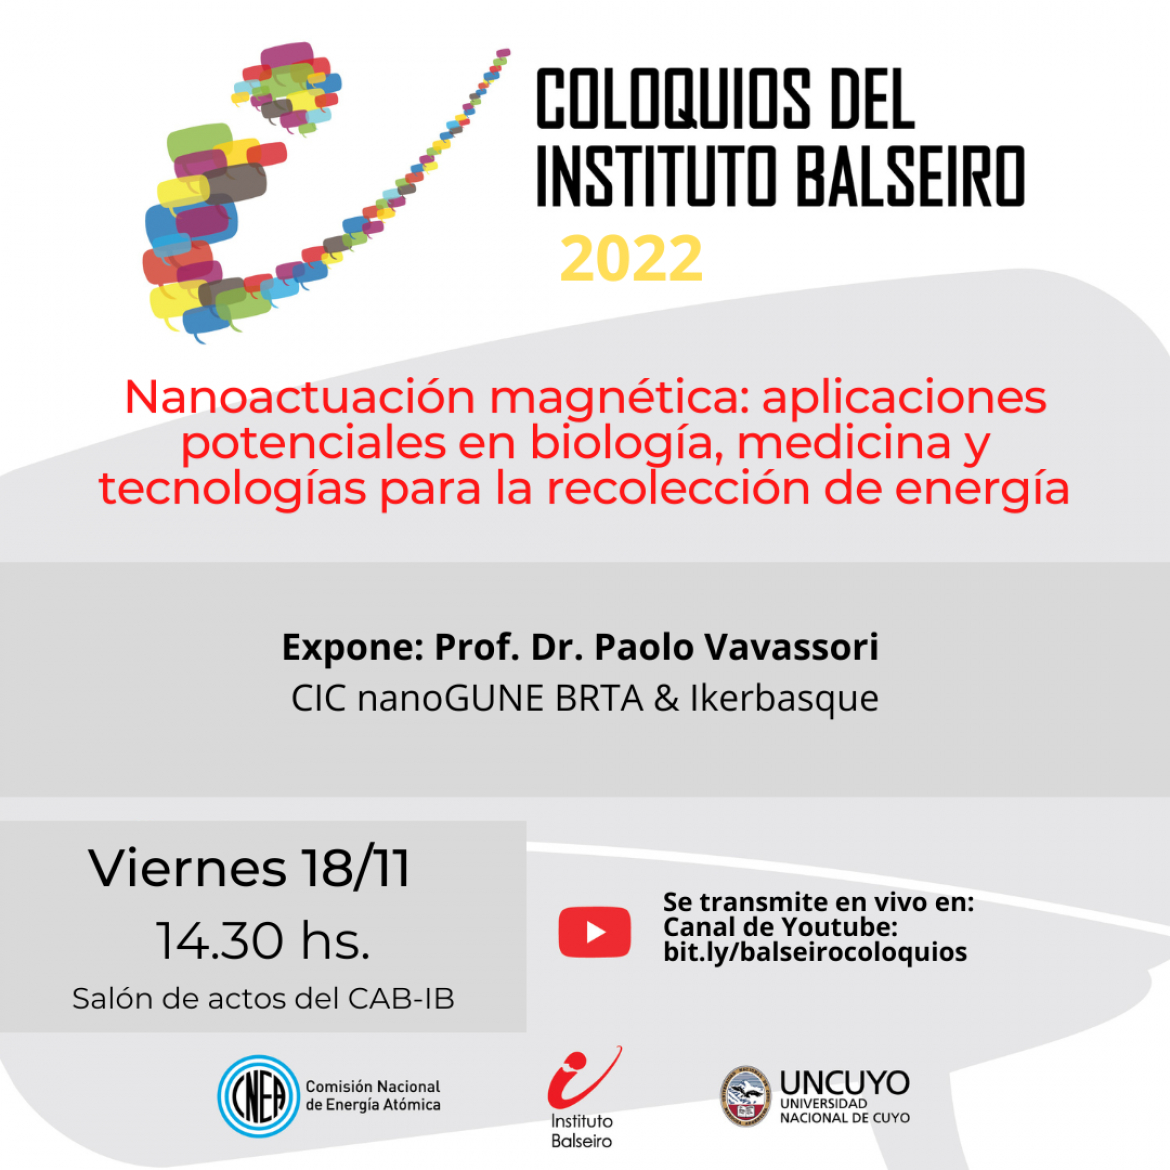 COLOQUIO DEL 18/11: Nanoactuación magnética: aplicaciones potenciales en biología, medicina y tecnologías para la recolección de energía